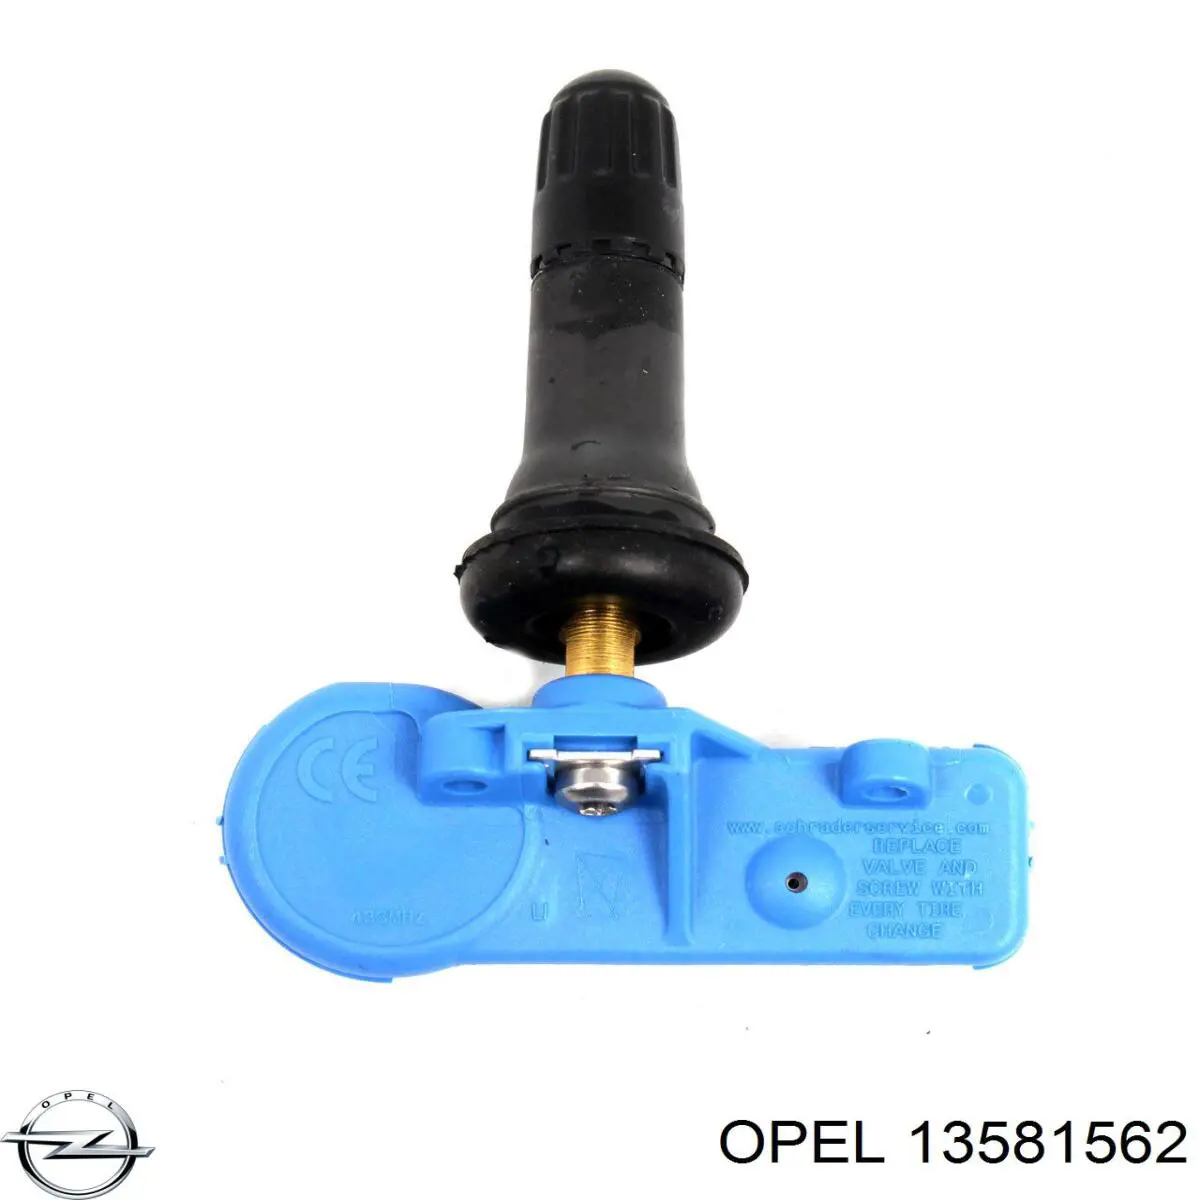 13581562 Opel датчик давления воздуха в шинах